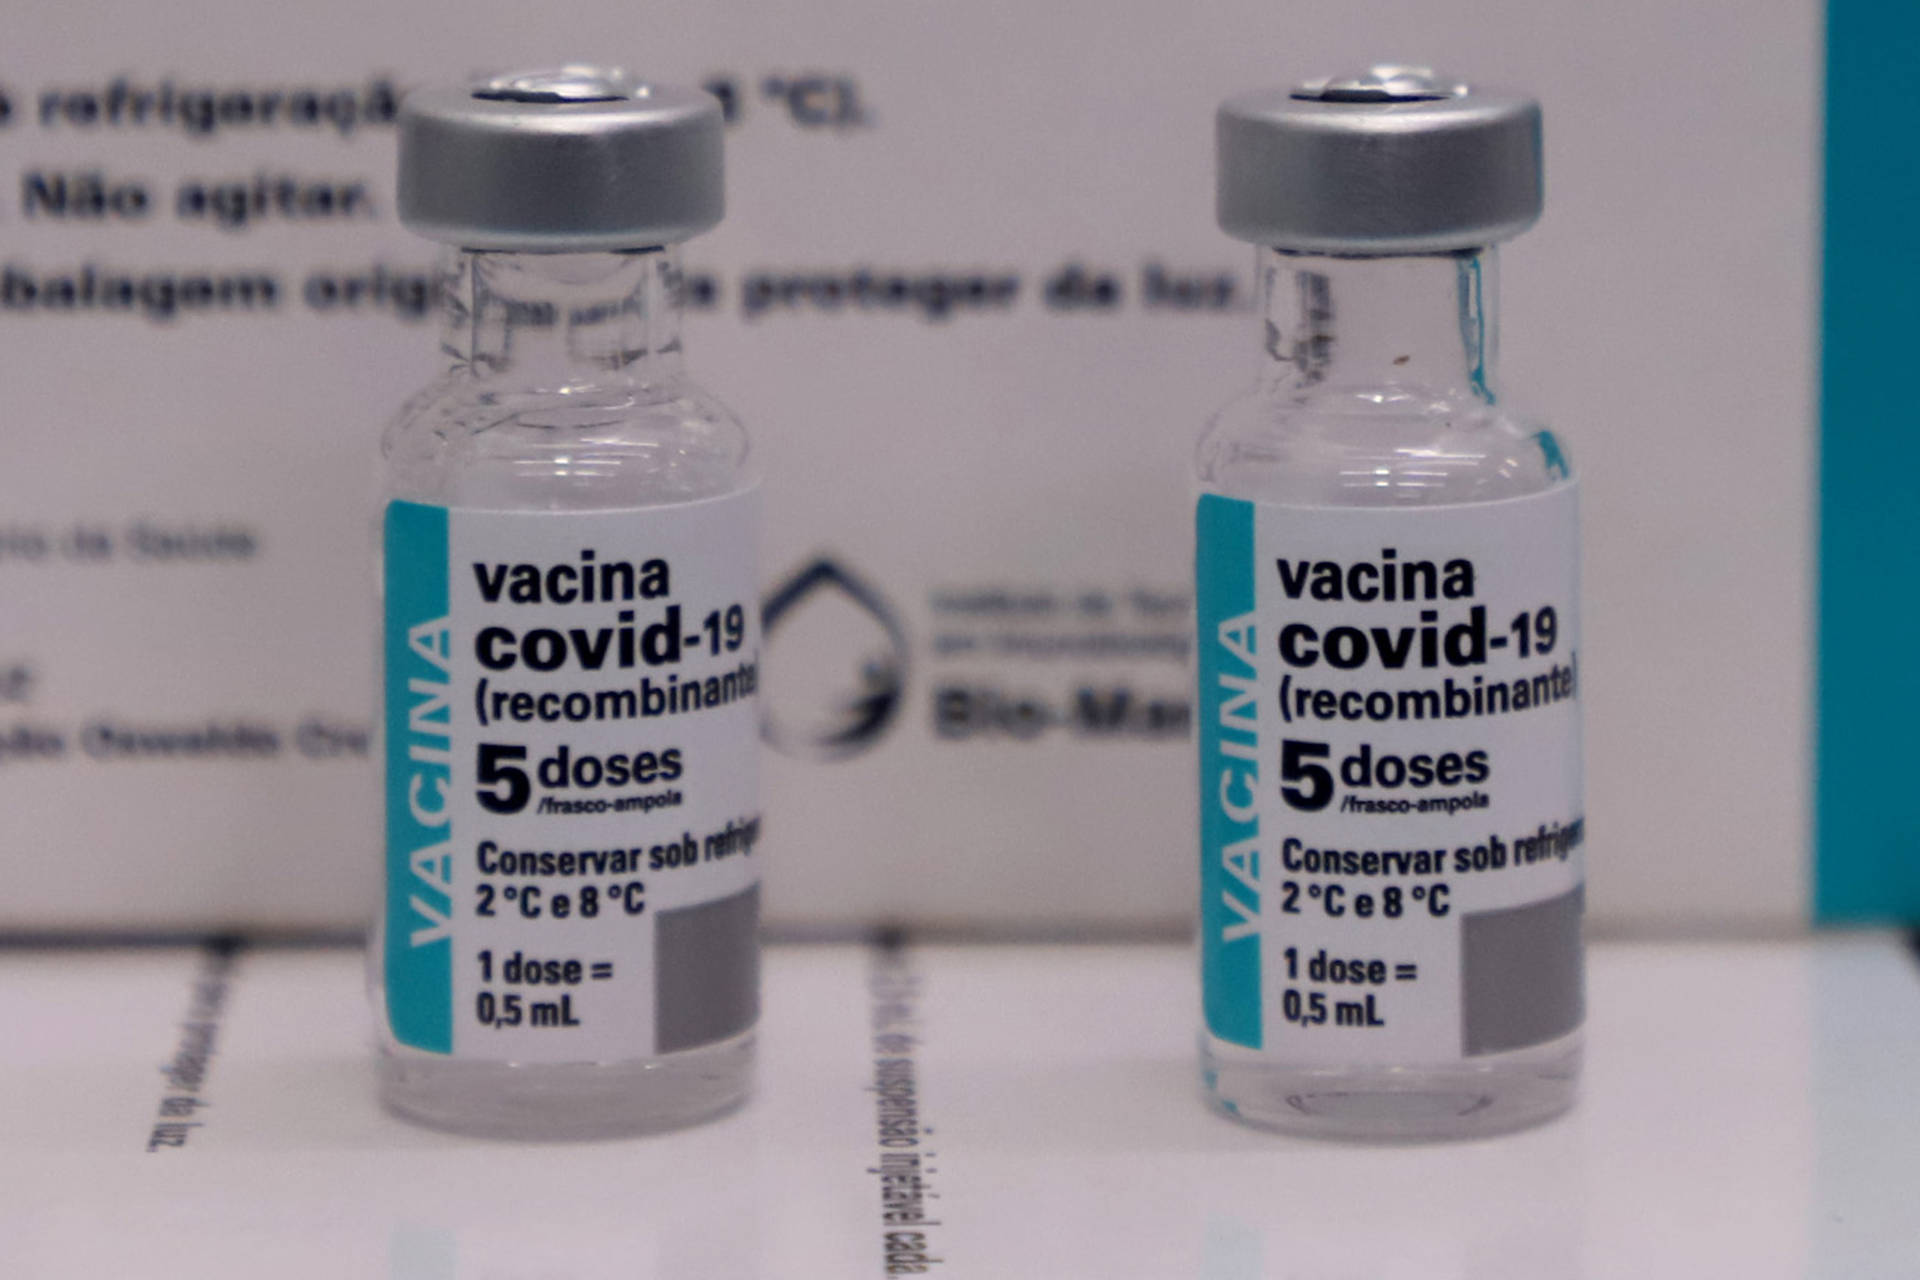 Adolescente com deficiência entra para grupo prioritário de vacinação contra a Covid-19